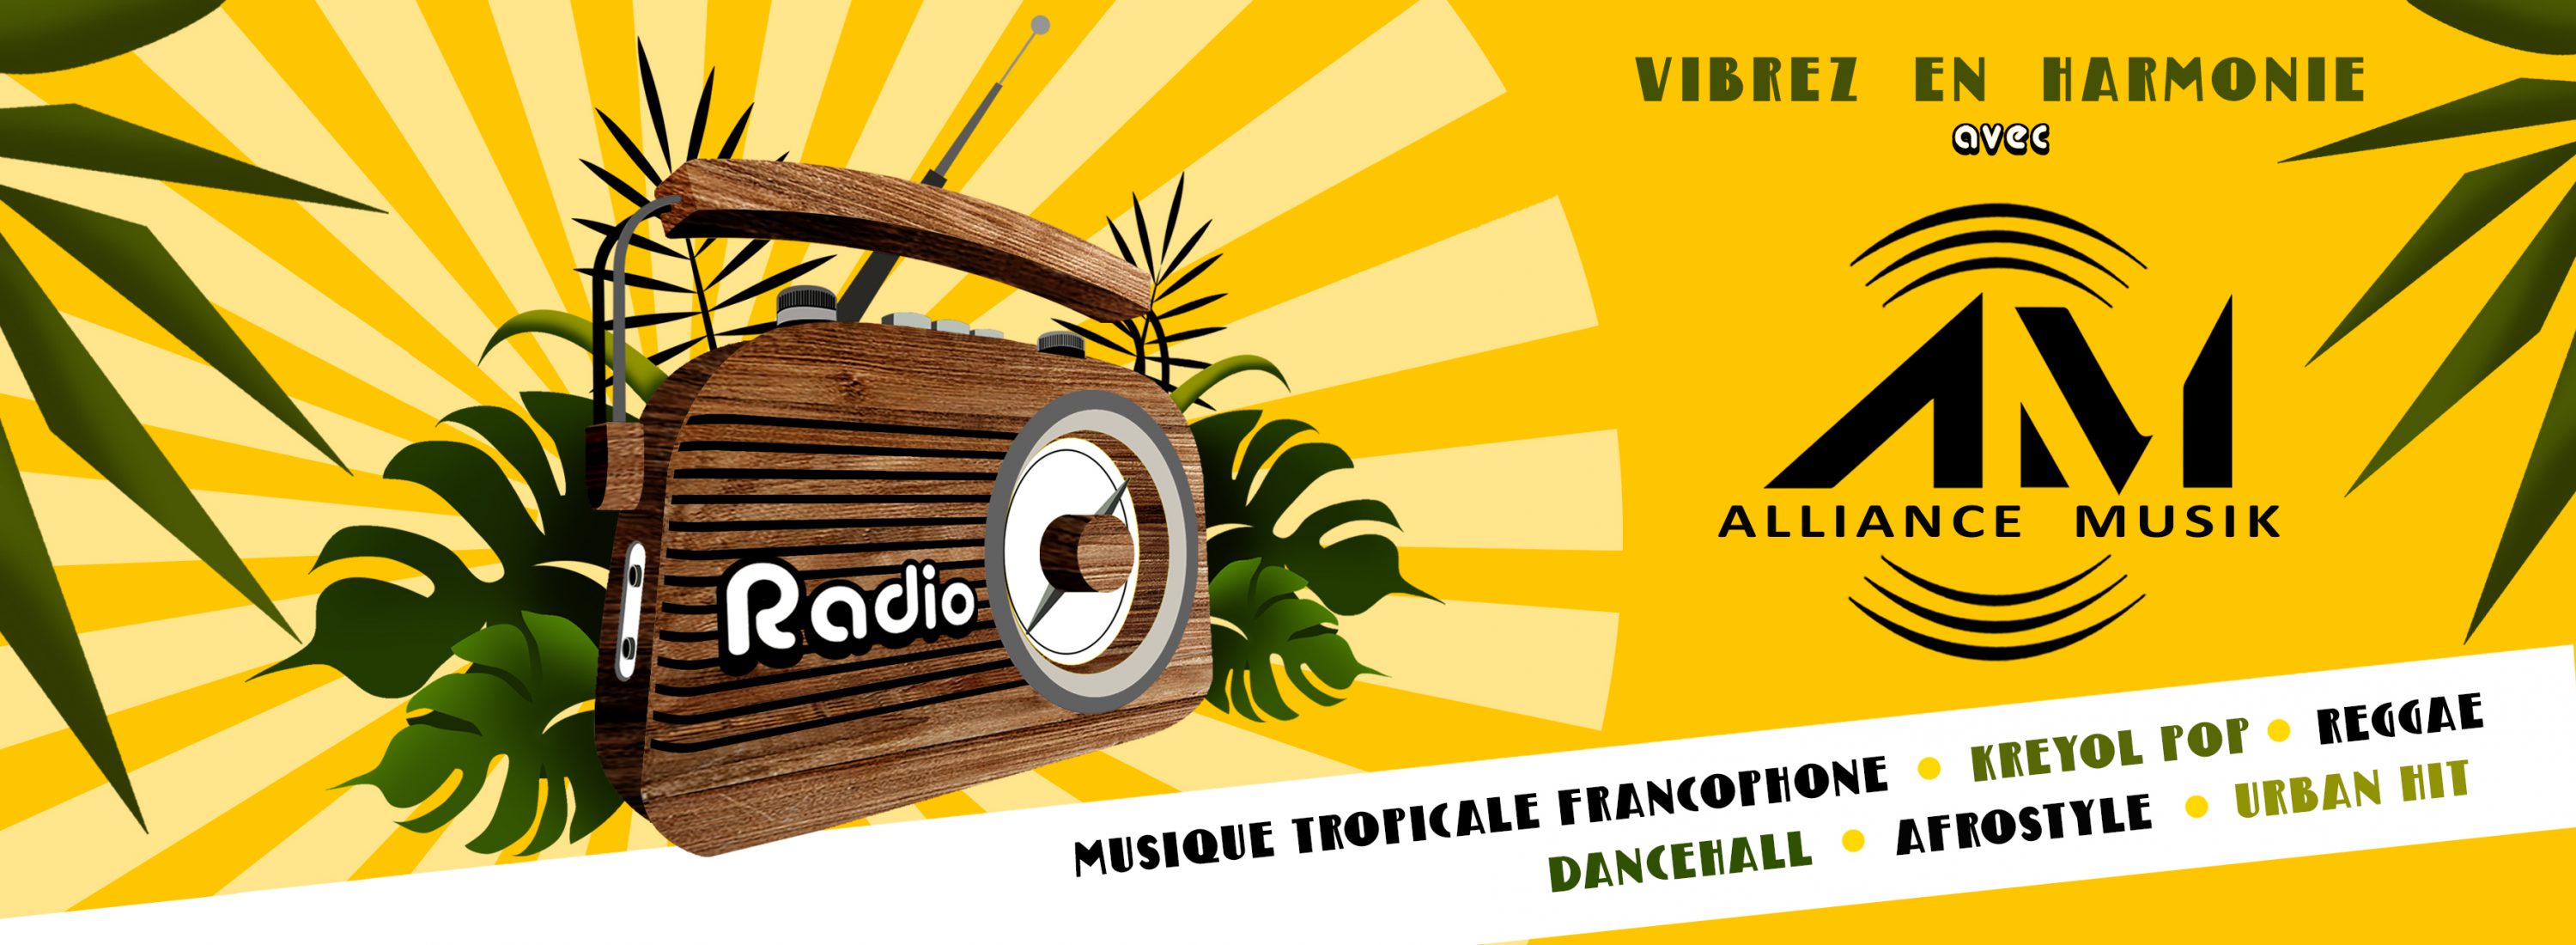 Alliance Musik radio streaming reggae musique tropicale